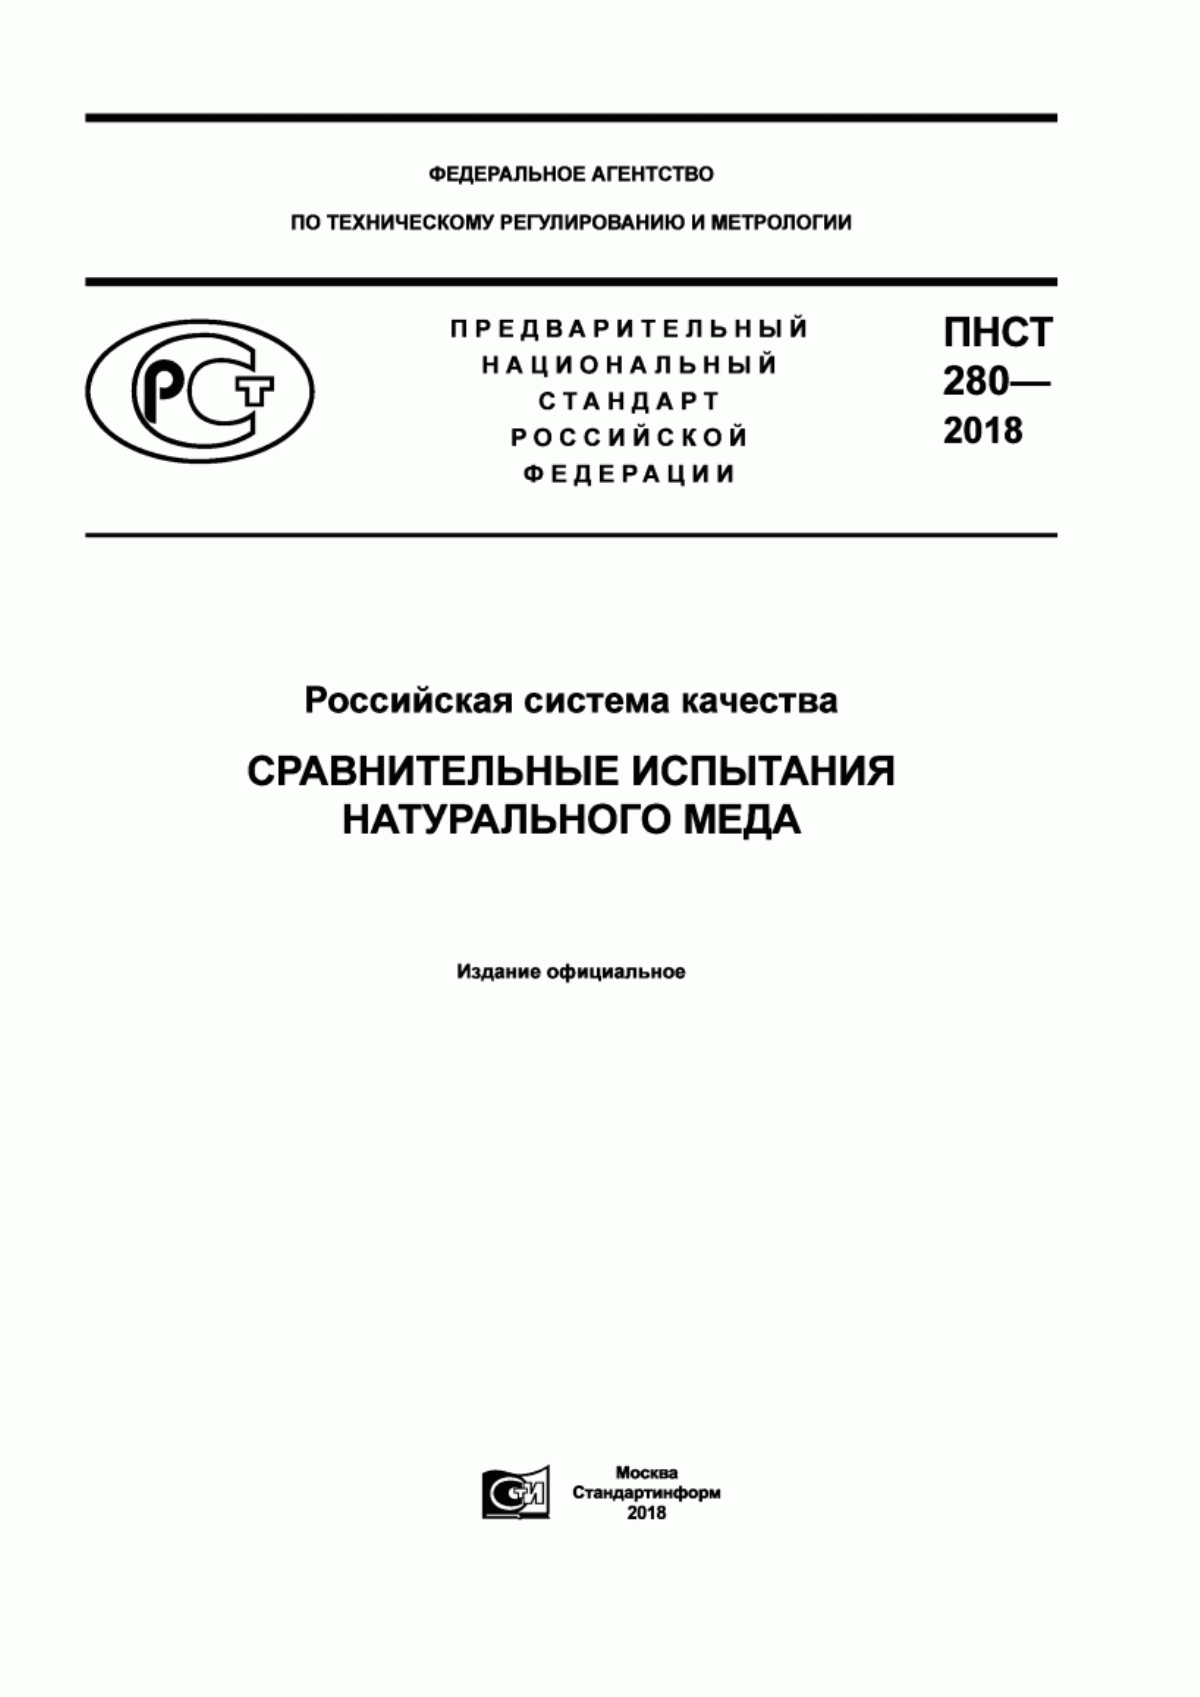 ПНСТ 280-2018 Российская система качества. Сравнительные испытания натурального меда